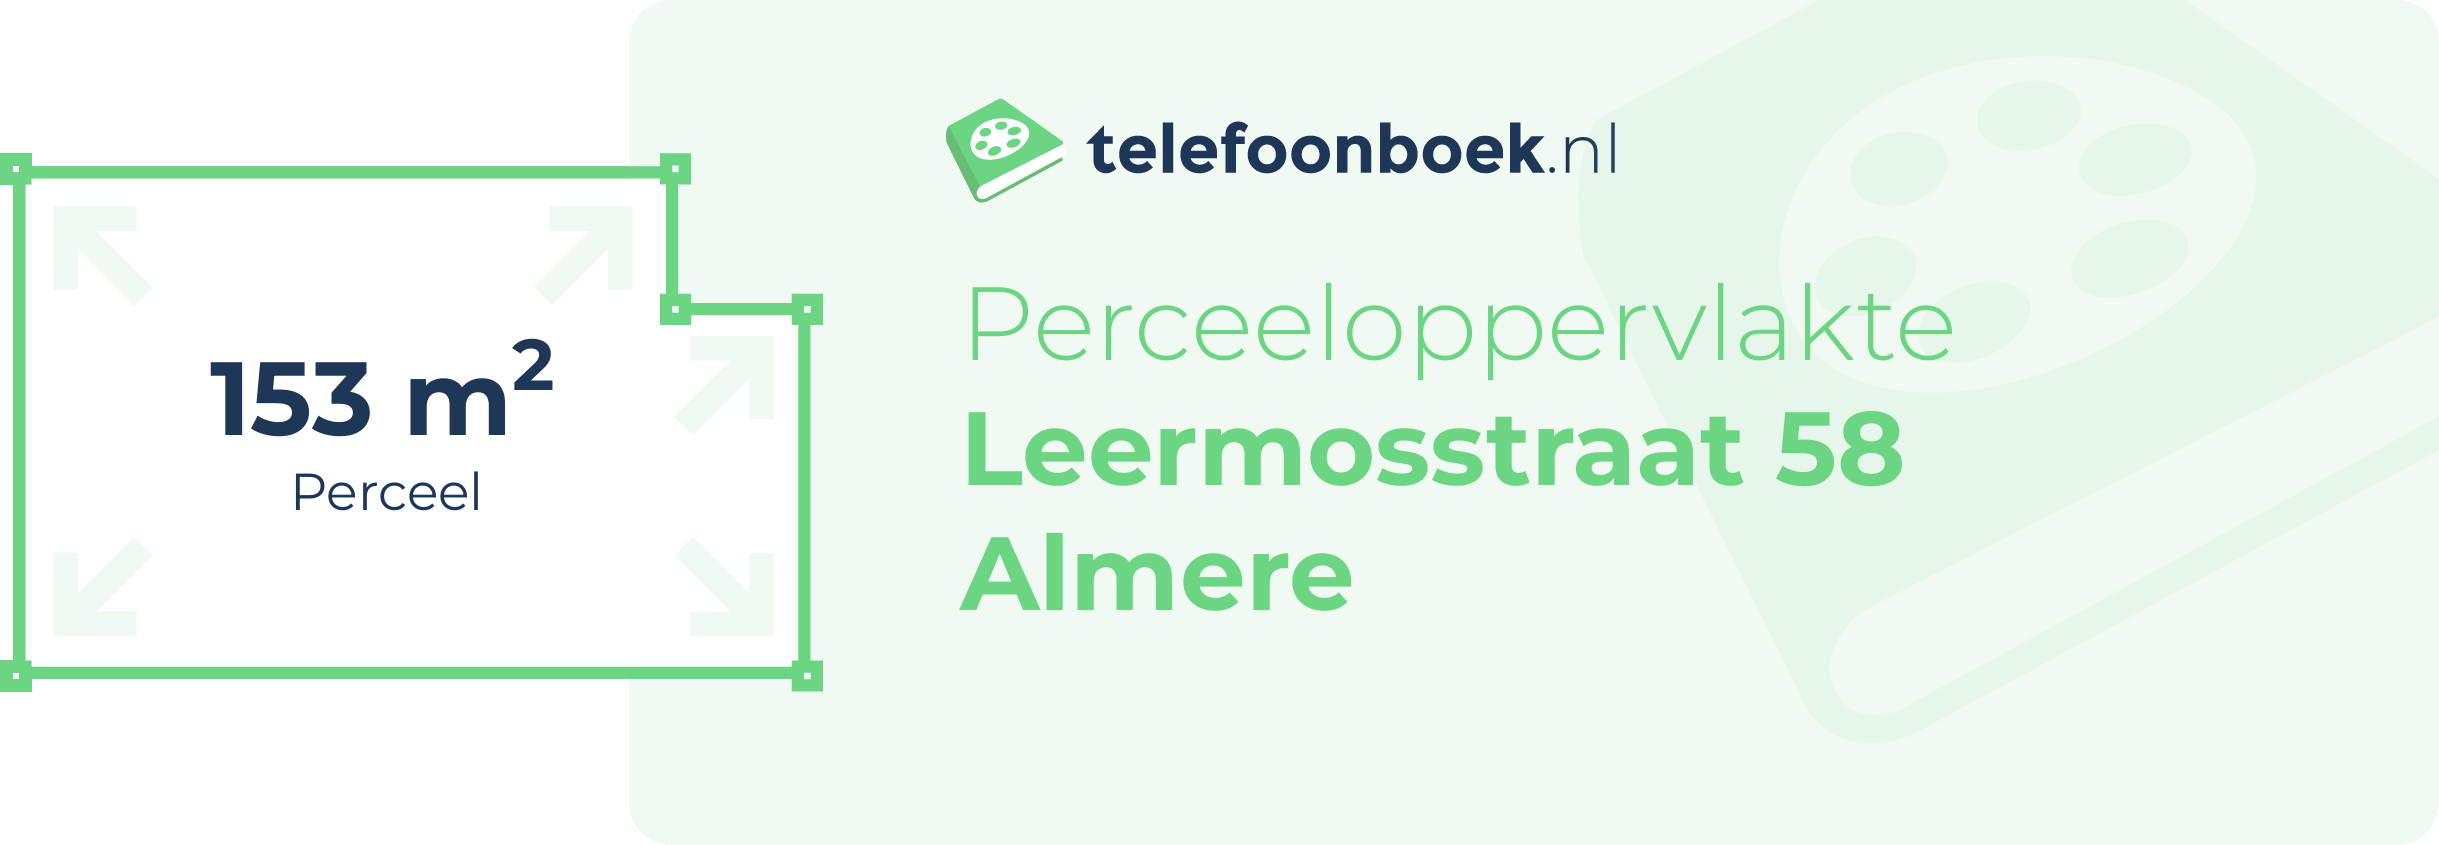 Perceeloppervlakte Leermosstraat 58 Almere